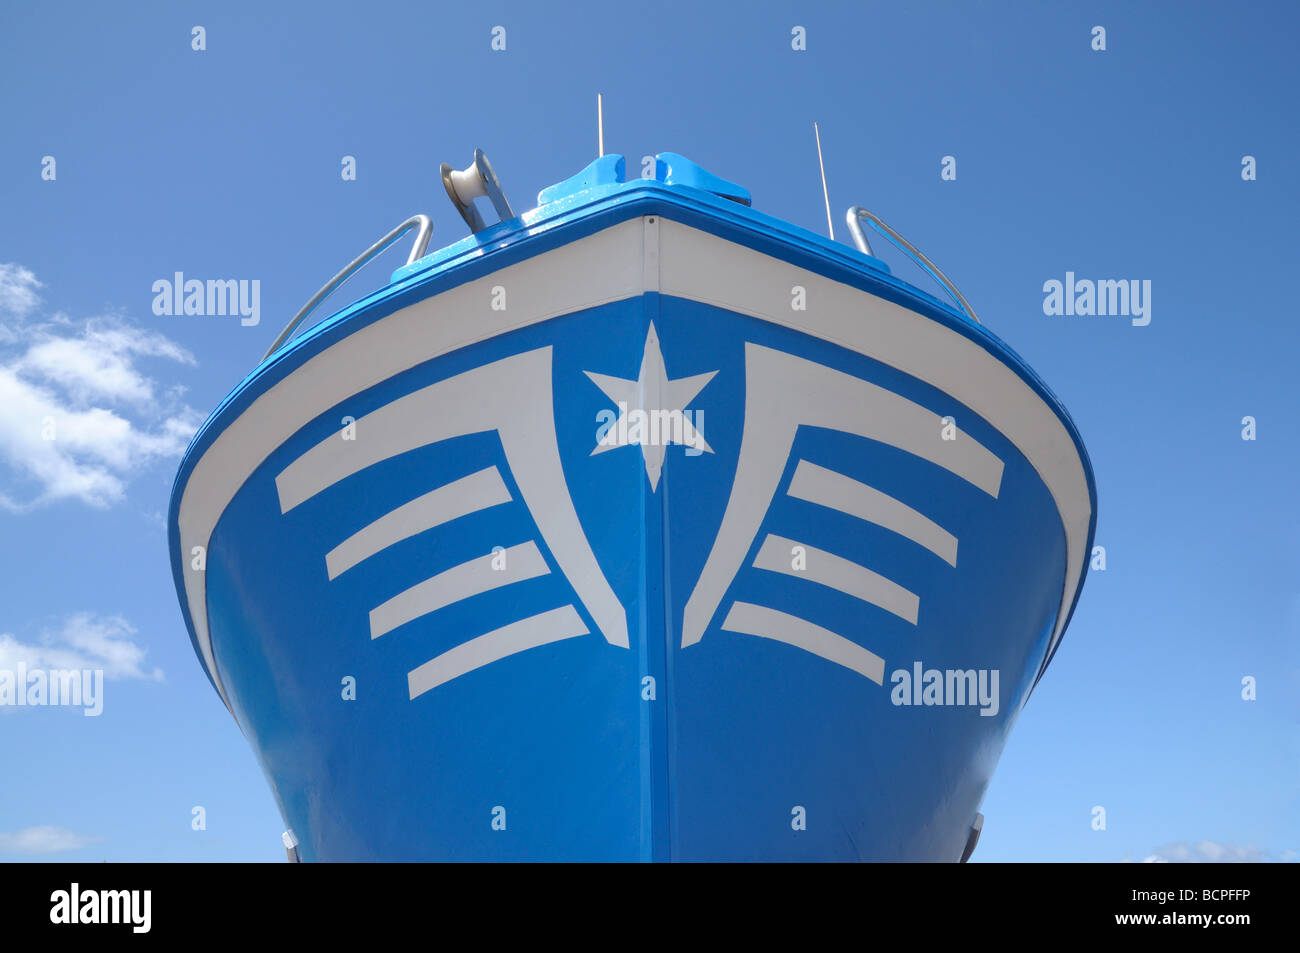 Prua della nave immagini e fotografie stock ad alta risoluzione - Alamy